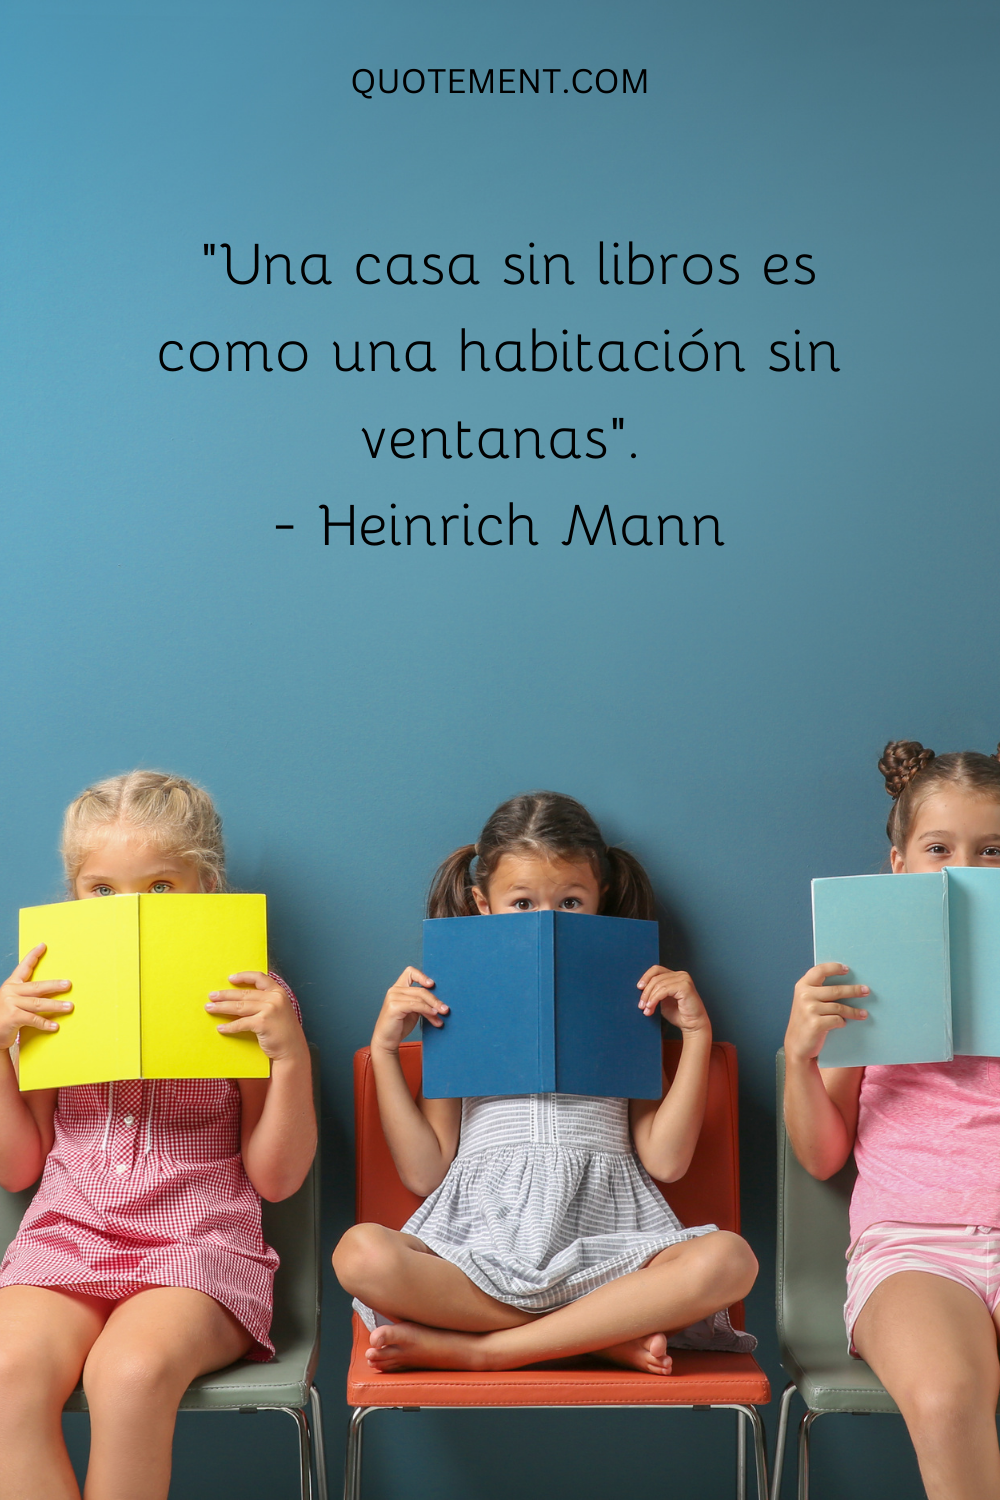 "Una casa sin libros es como una habitación sin ventanas". - Heinrich Mann